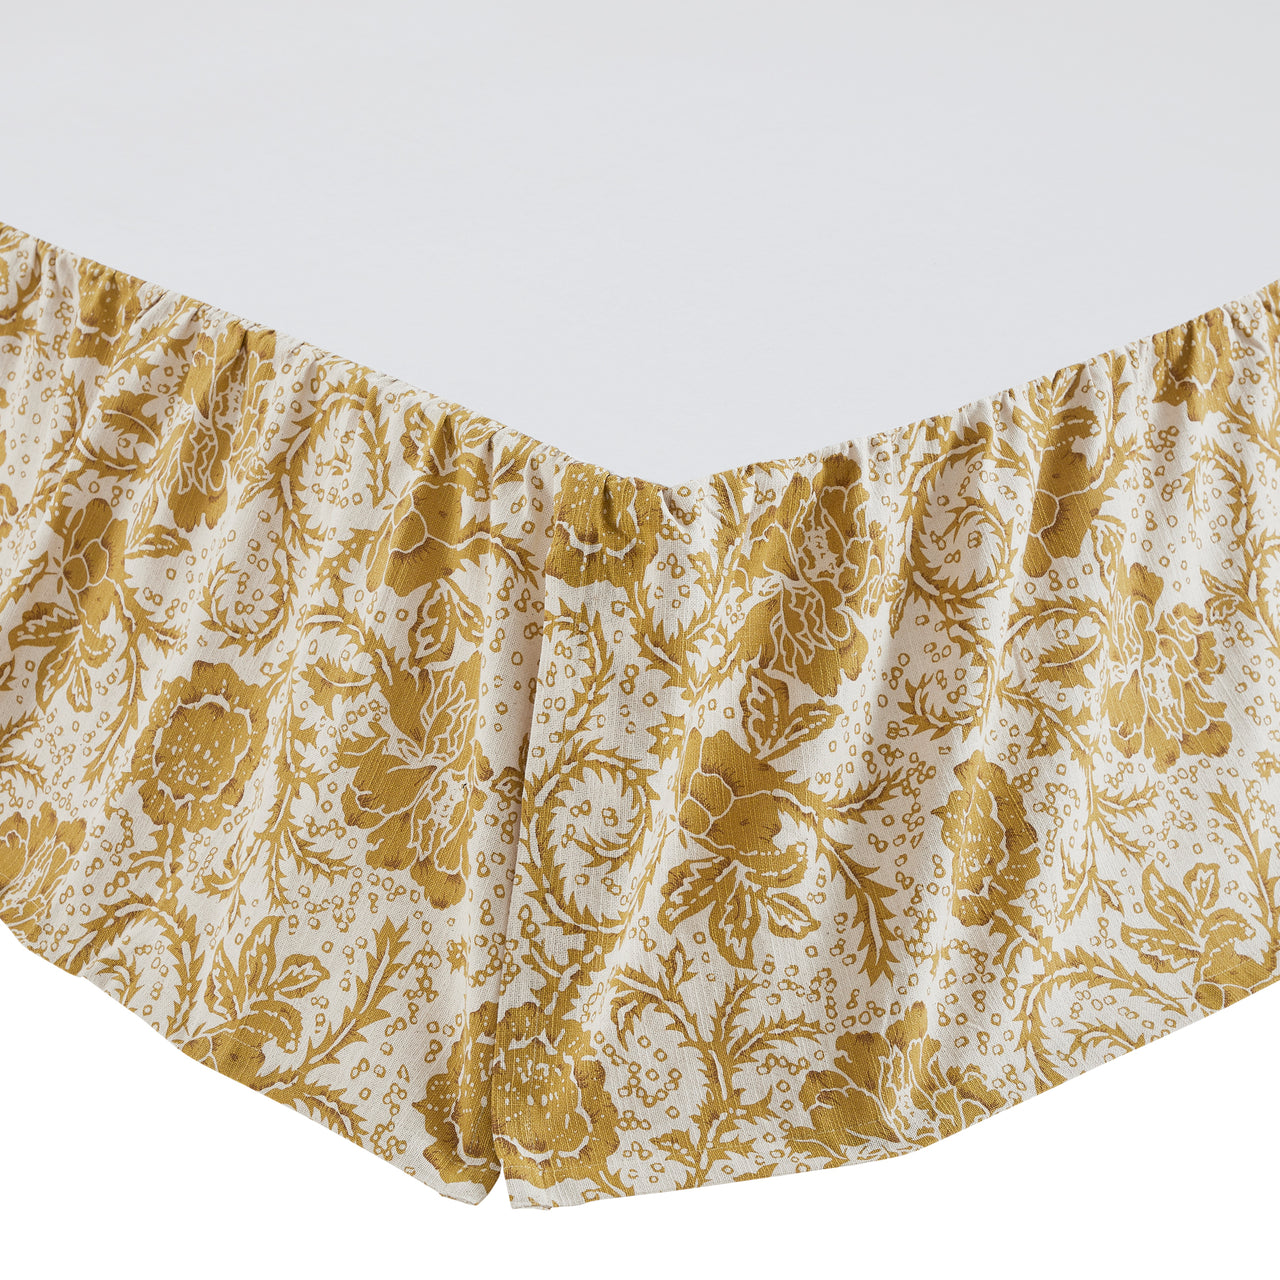 Dorset Gold Floral Queen Bed Skirt 60x80x16 VHC Brands